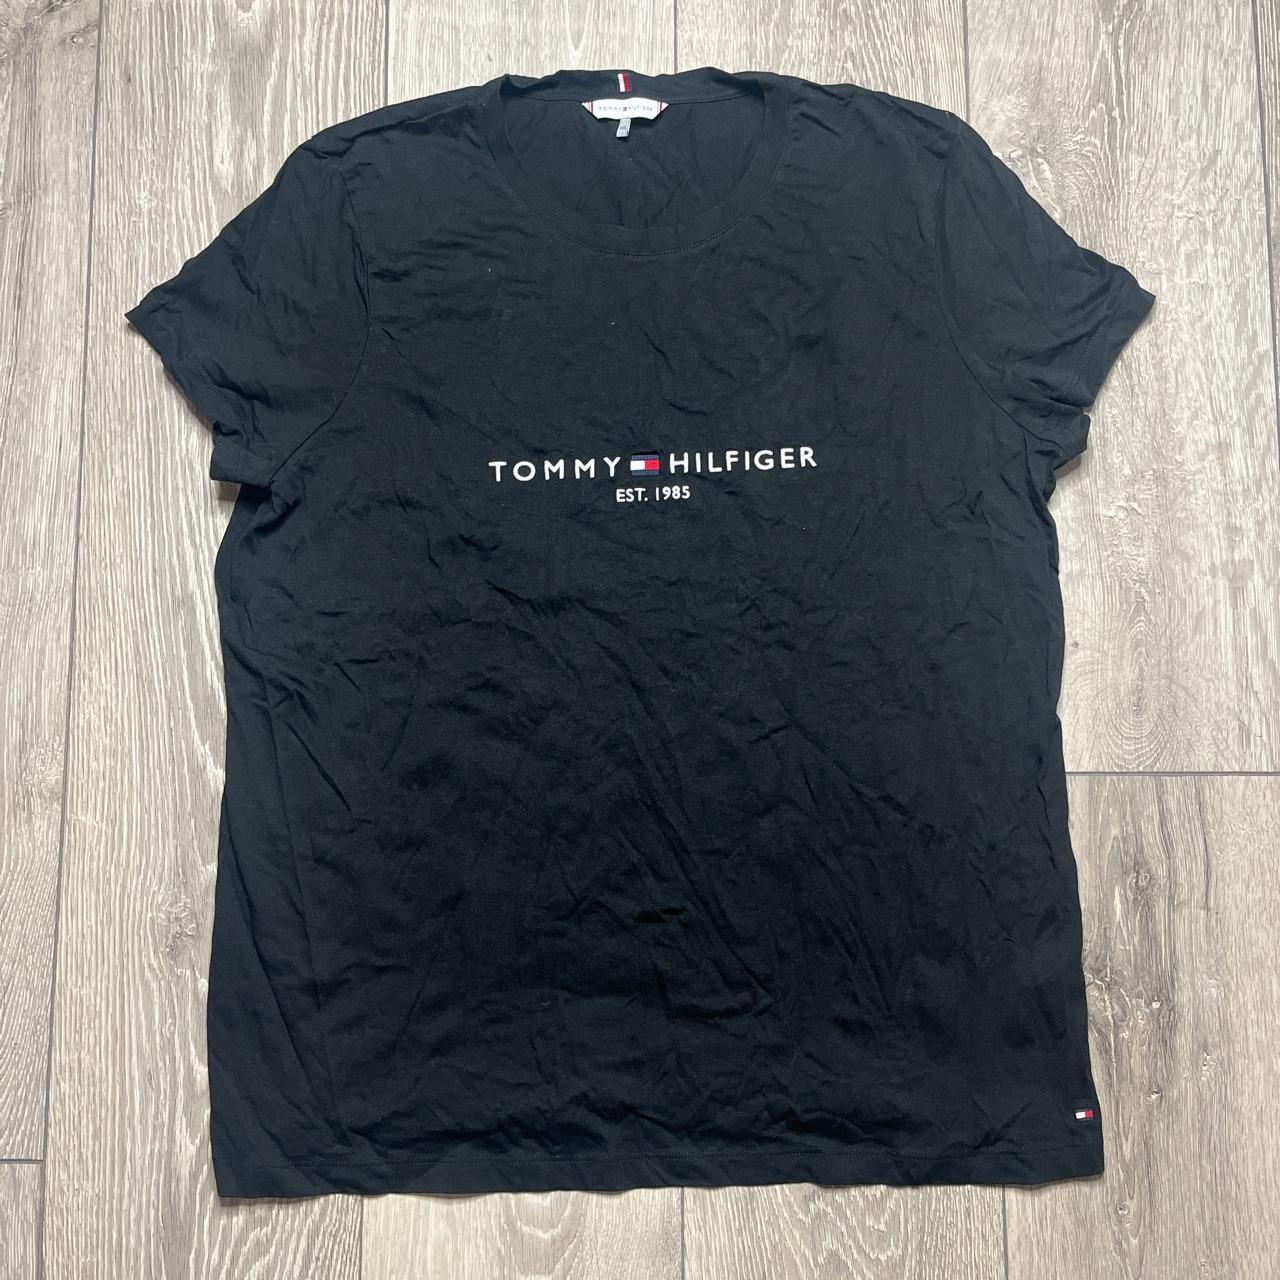 Tommy Hilfiger Women's T-shirt | Depop